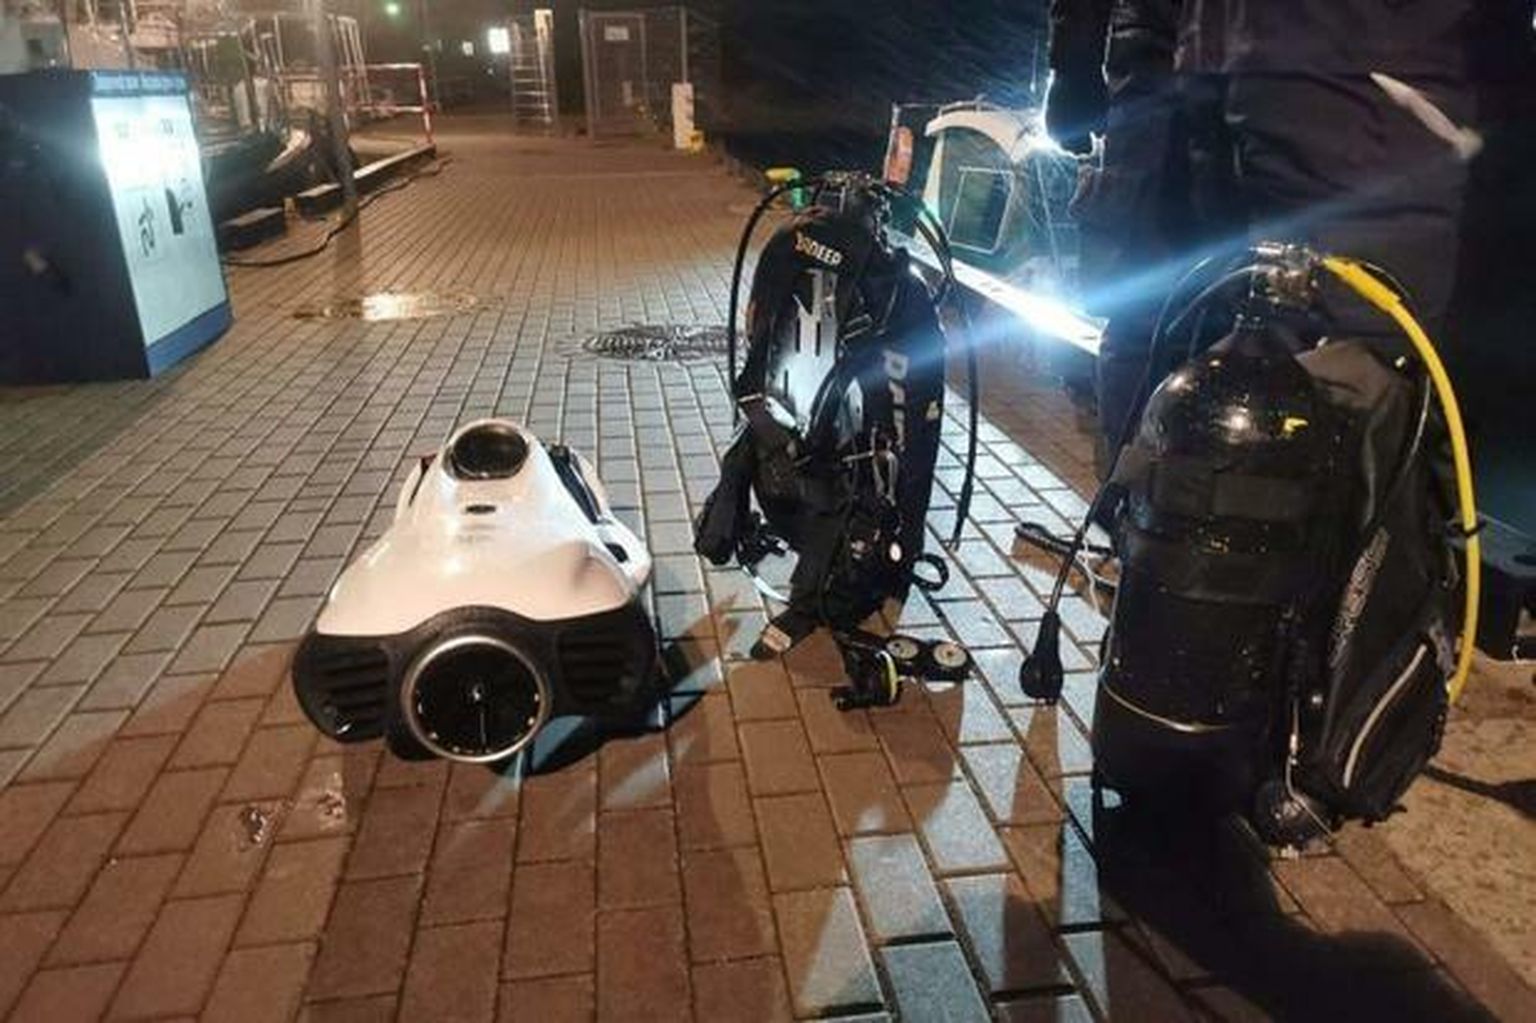 Paadist leitud sukeldumisvarustus ja motoriseeritud veealune sõiduk. Poola meedia spekuleerib, et tegemist võis olla spioneerimiskatsega. FOTO: Poola Politsei